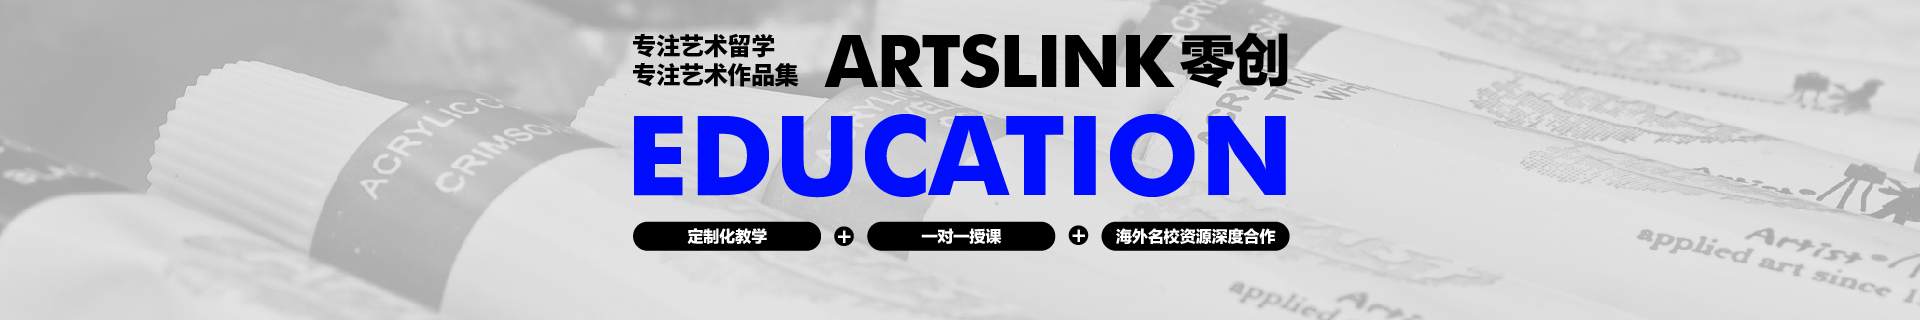 南京零创国际艺术教育